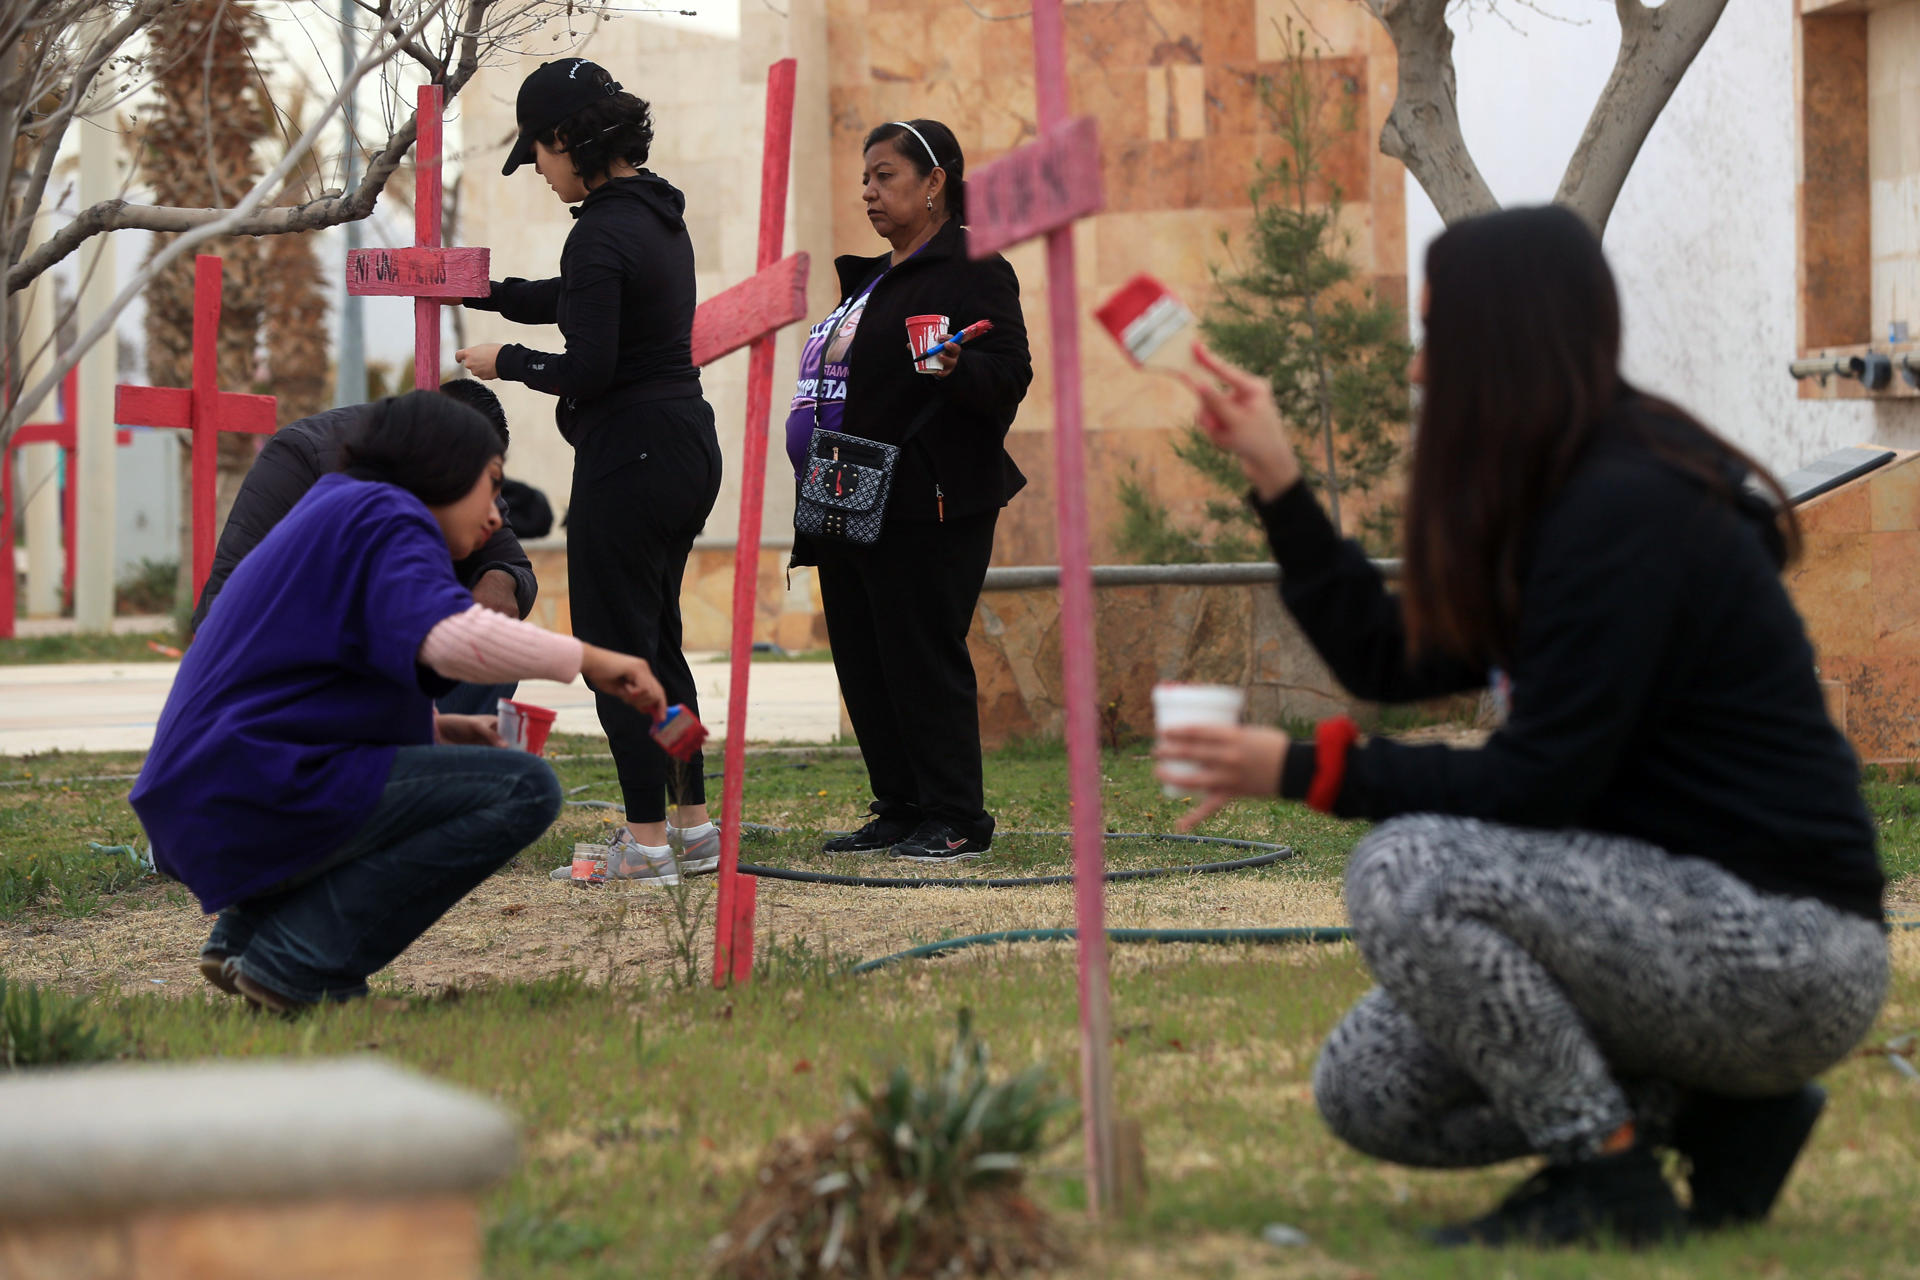 Fotografía de archivo en la que se registró a un grupo de activistas y madres de víctimas de feminicidios, durante un acto en memoria de las mujeres asesinadas, en el Memorial Campo Algodonero, en Ciudad Juárez (estado de Chihuahua, México). EFE/Luis Torres